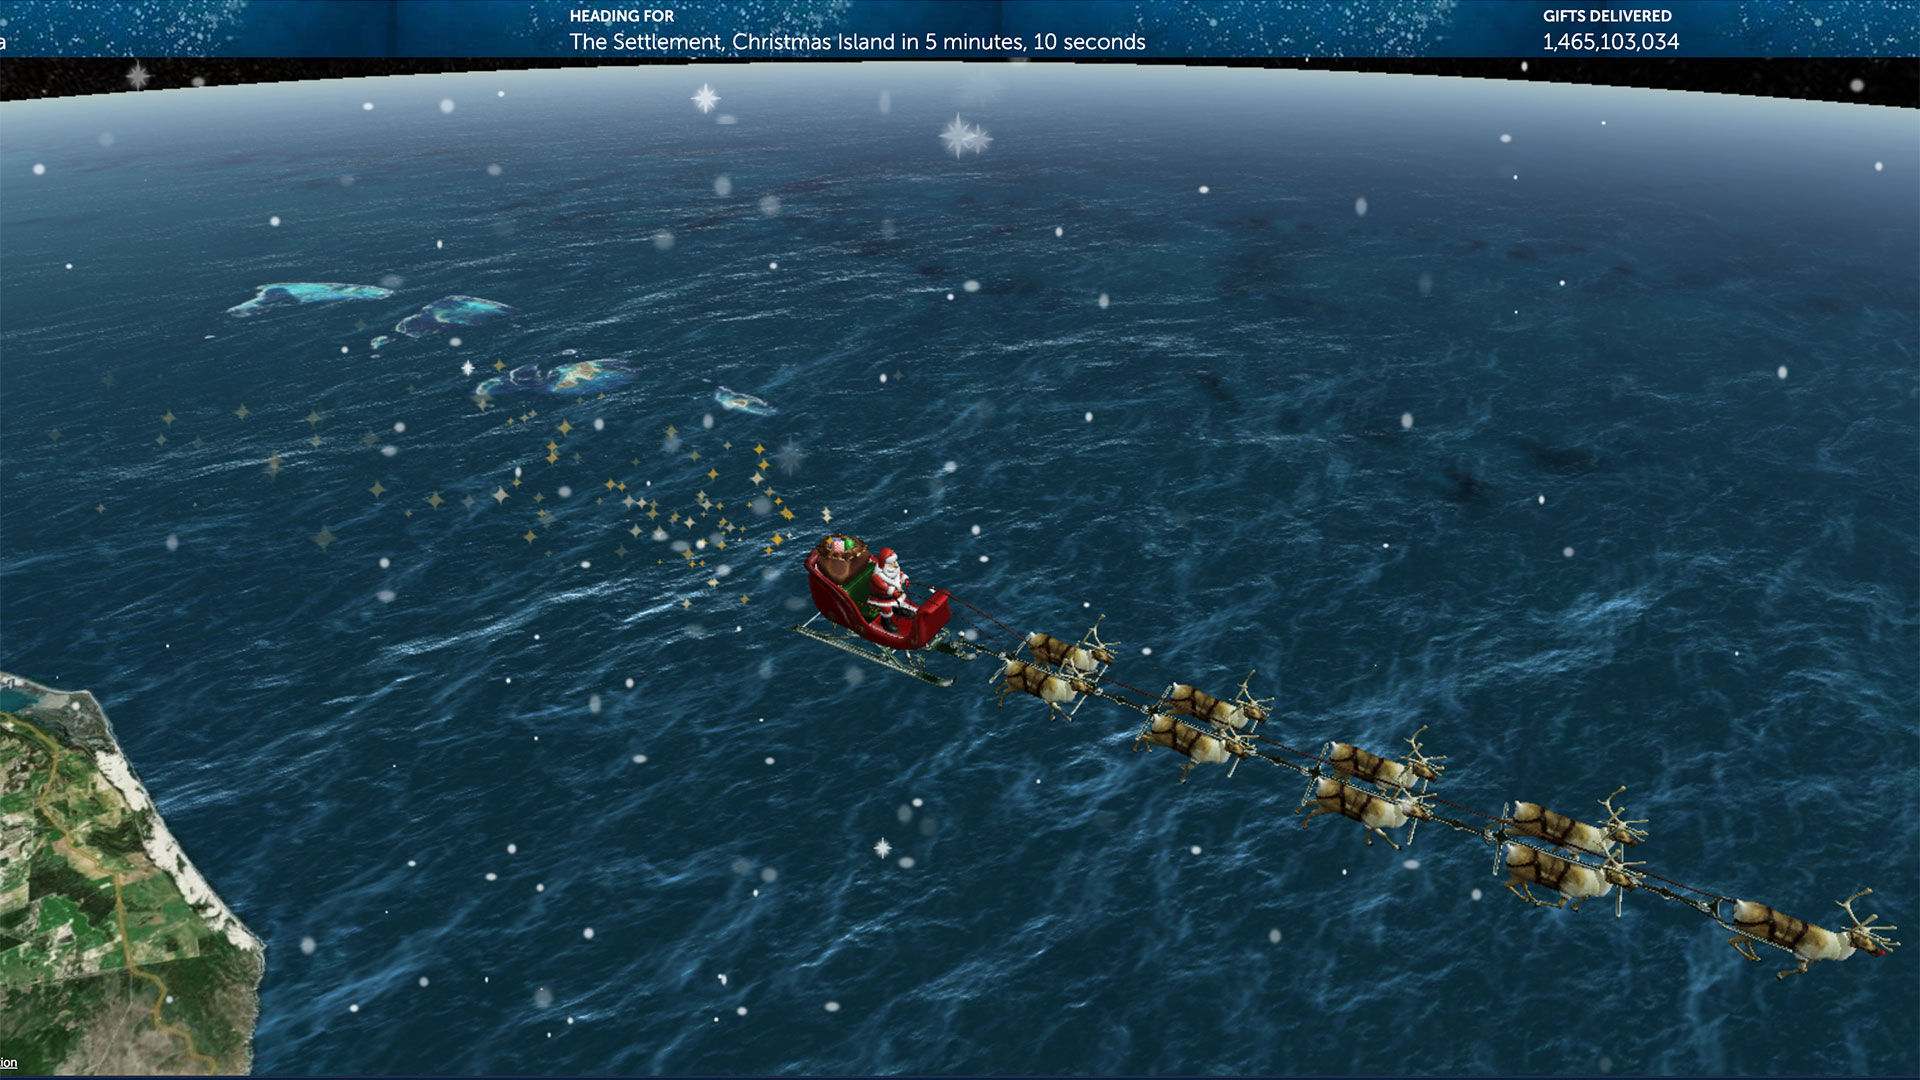 Santa headed towards Christmas Island on the NORAD Santa tracker